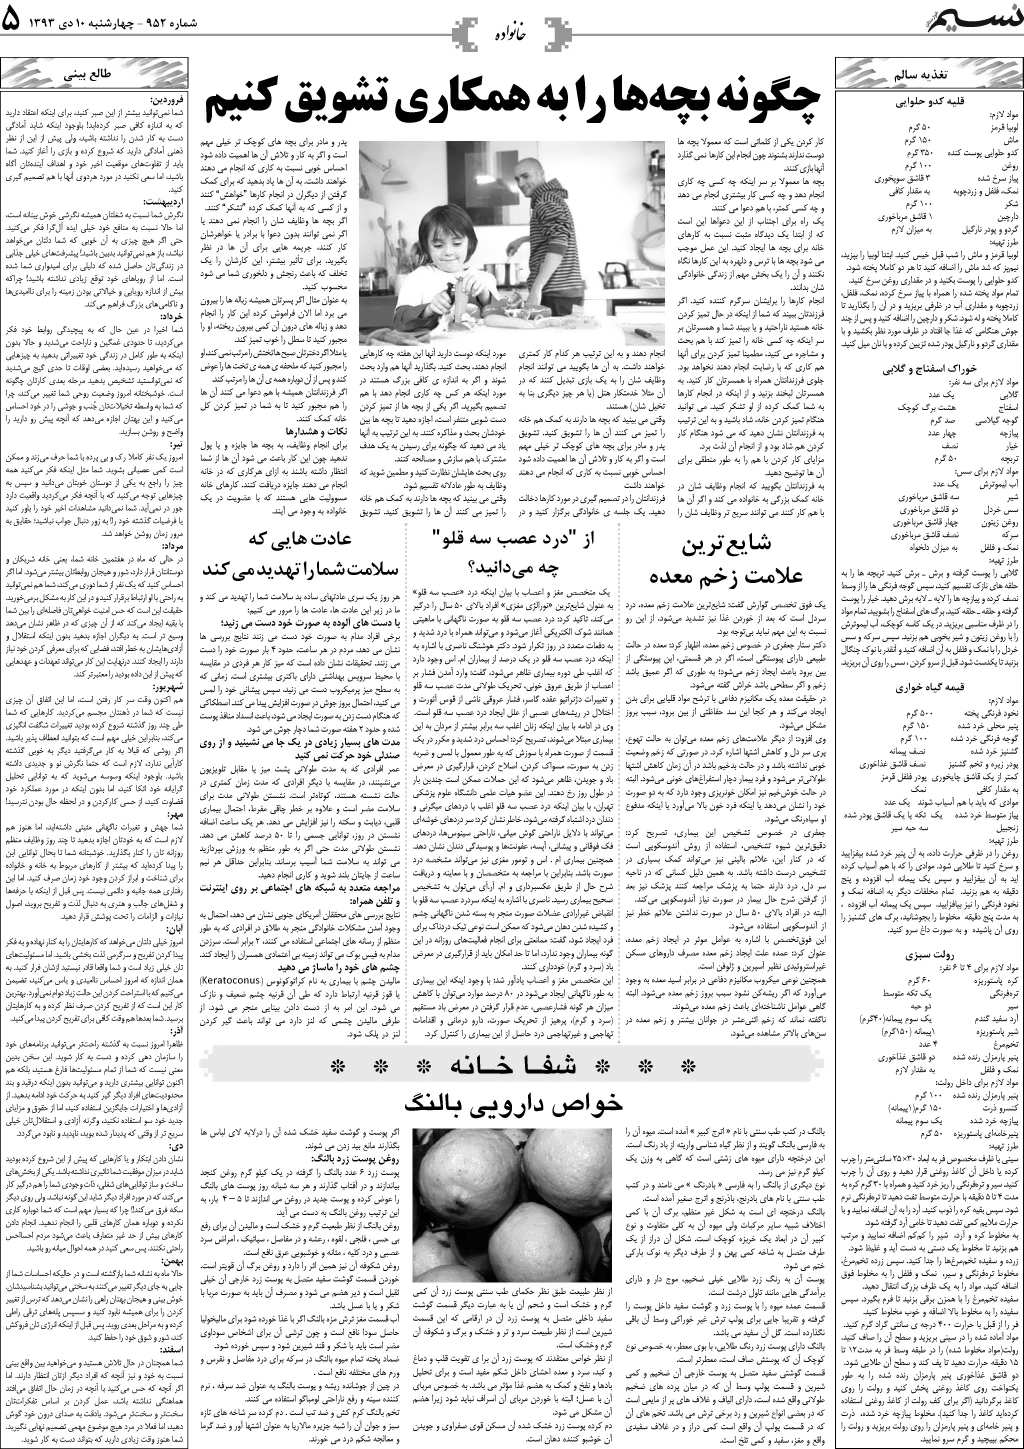 صفحه خانواده روزنامه نسیم شماره 952